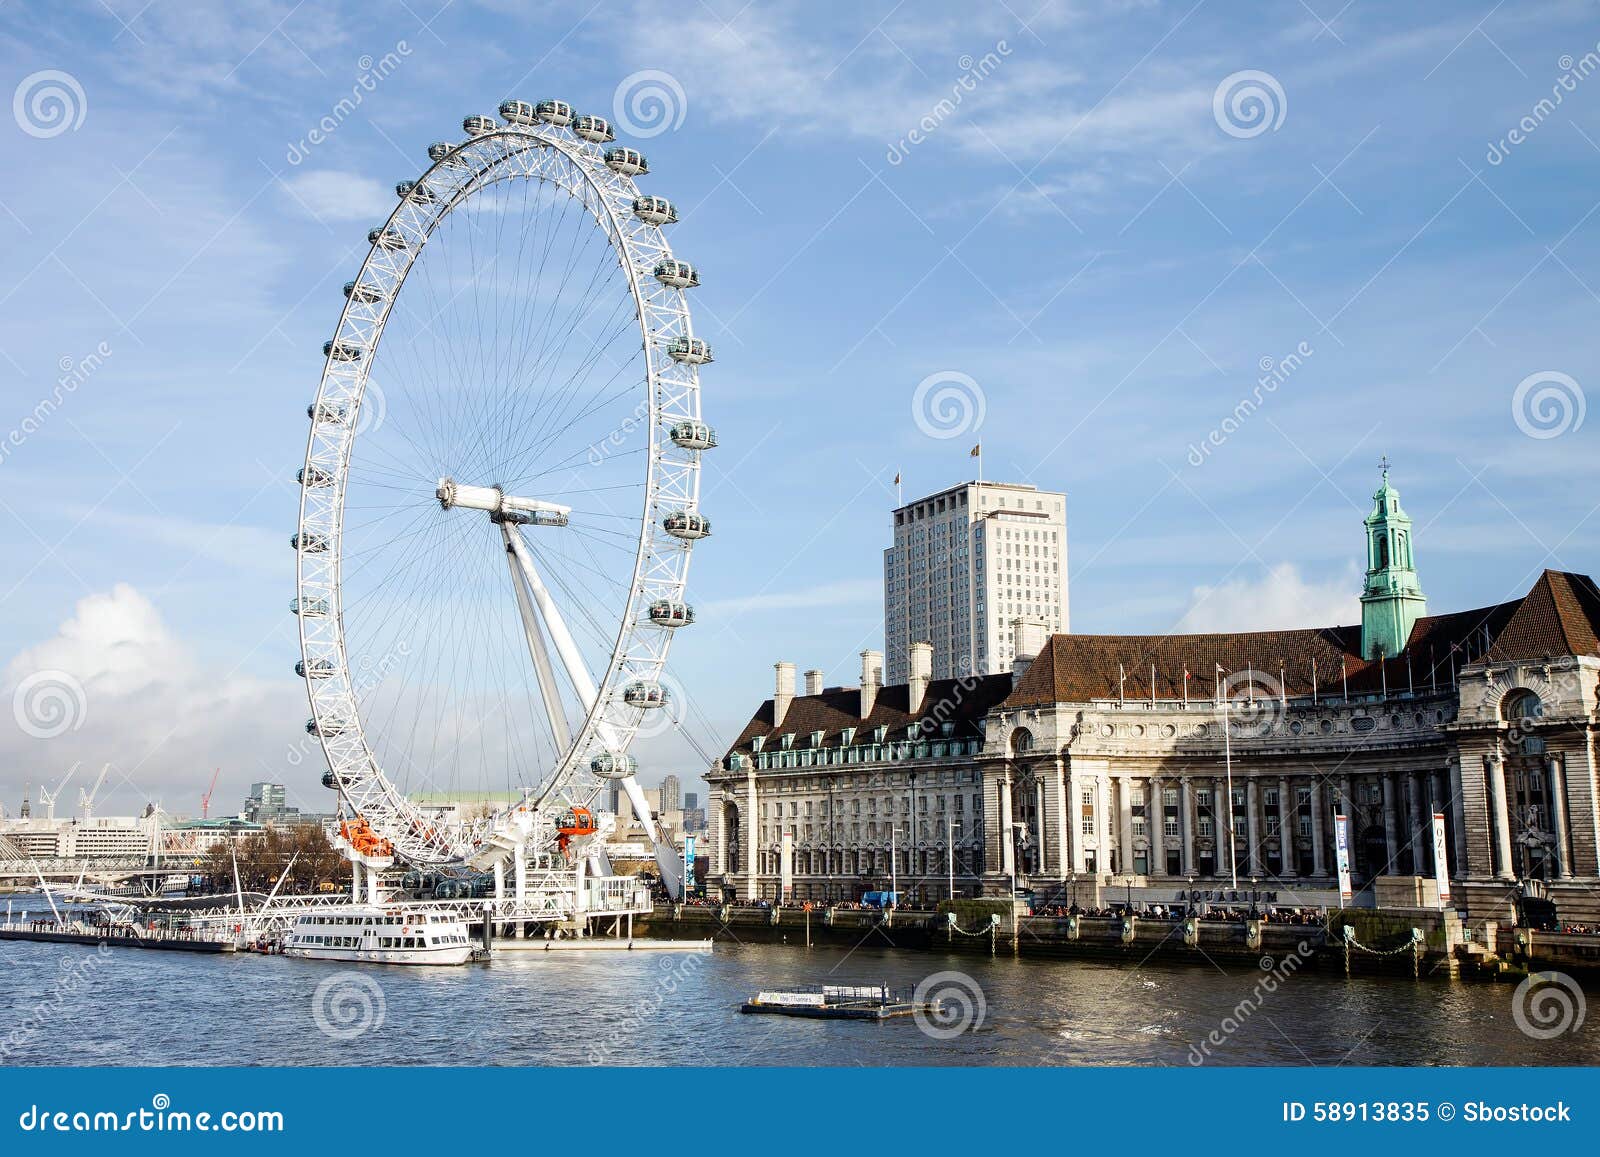 London Eye: April 2010